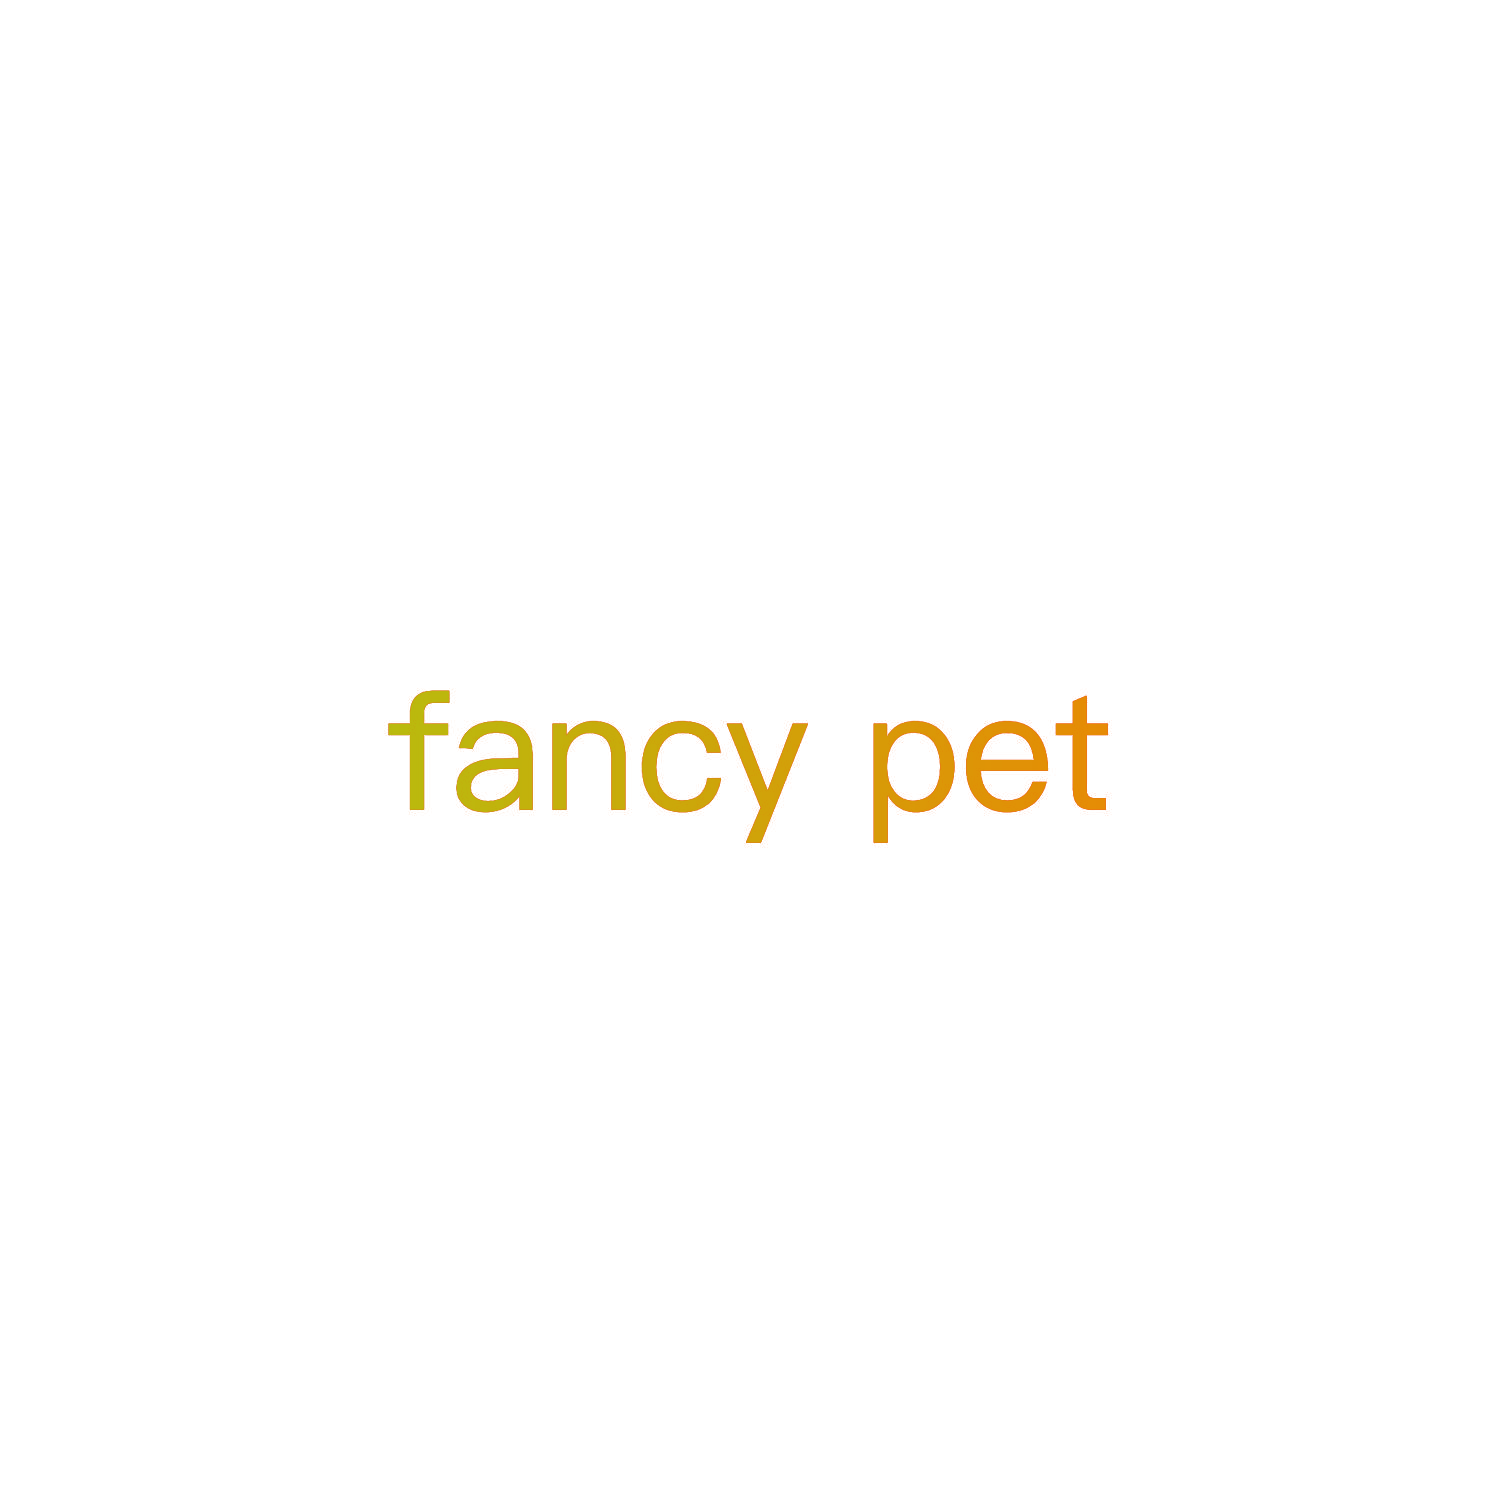 FANCY PET